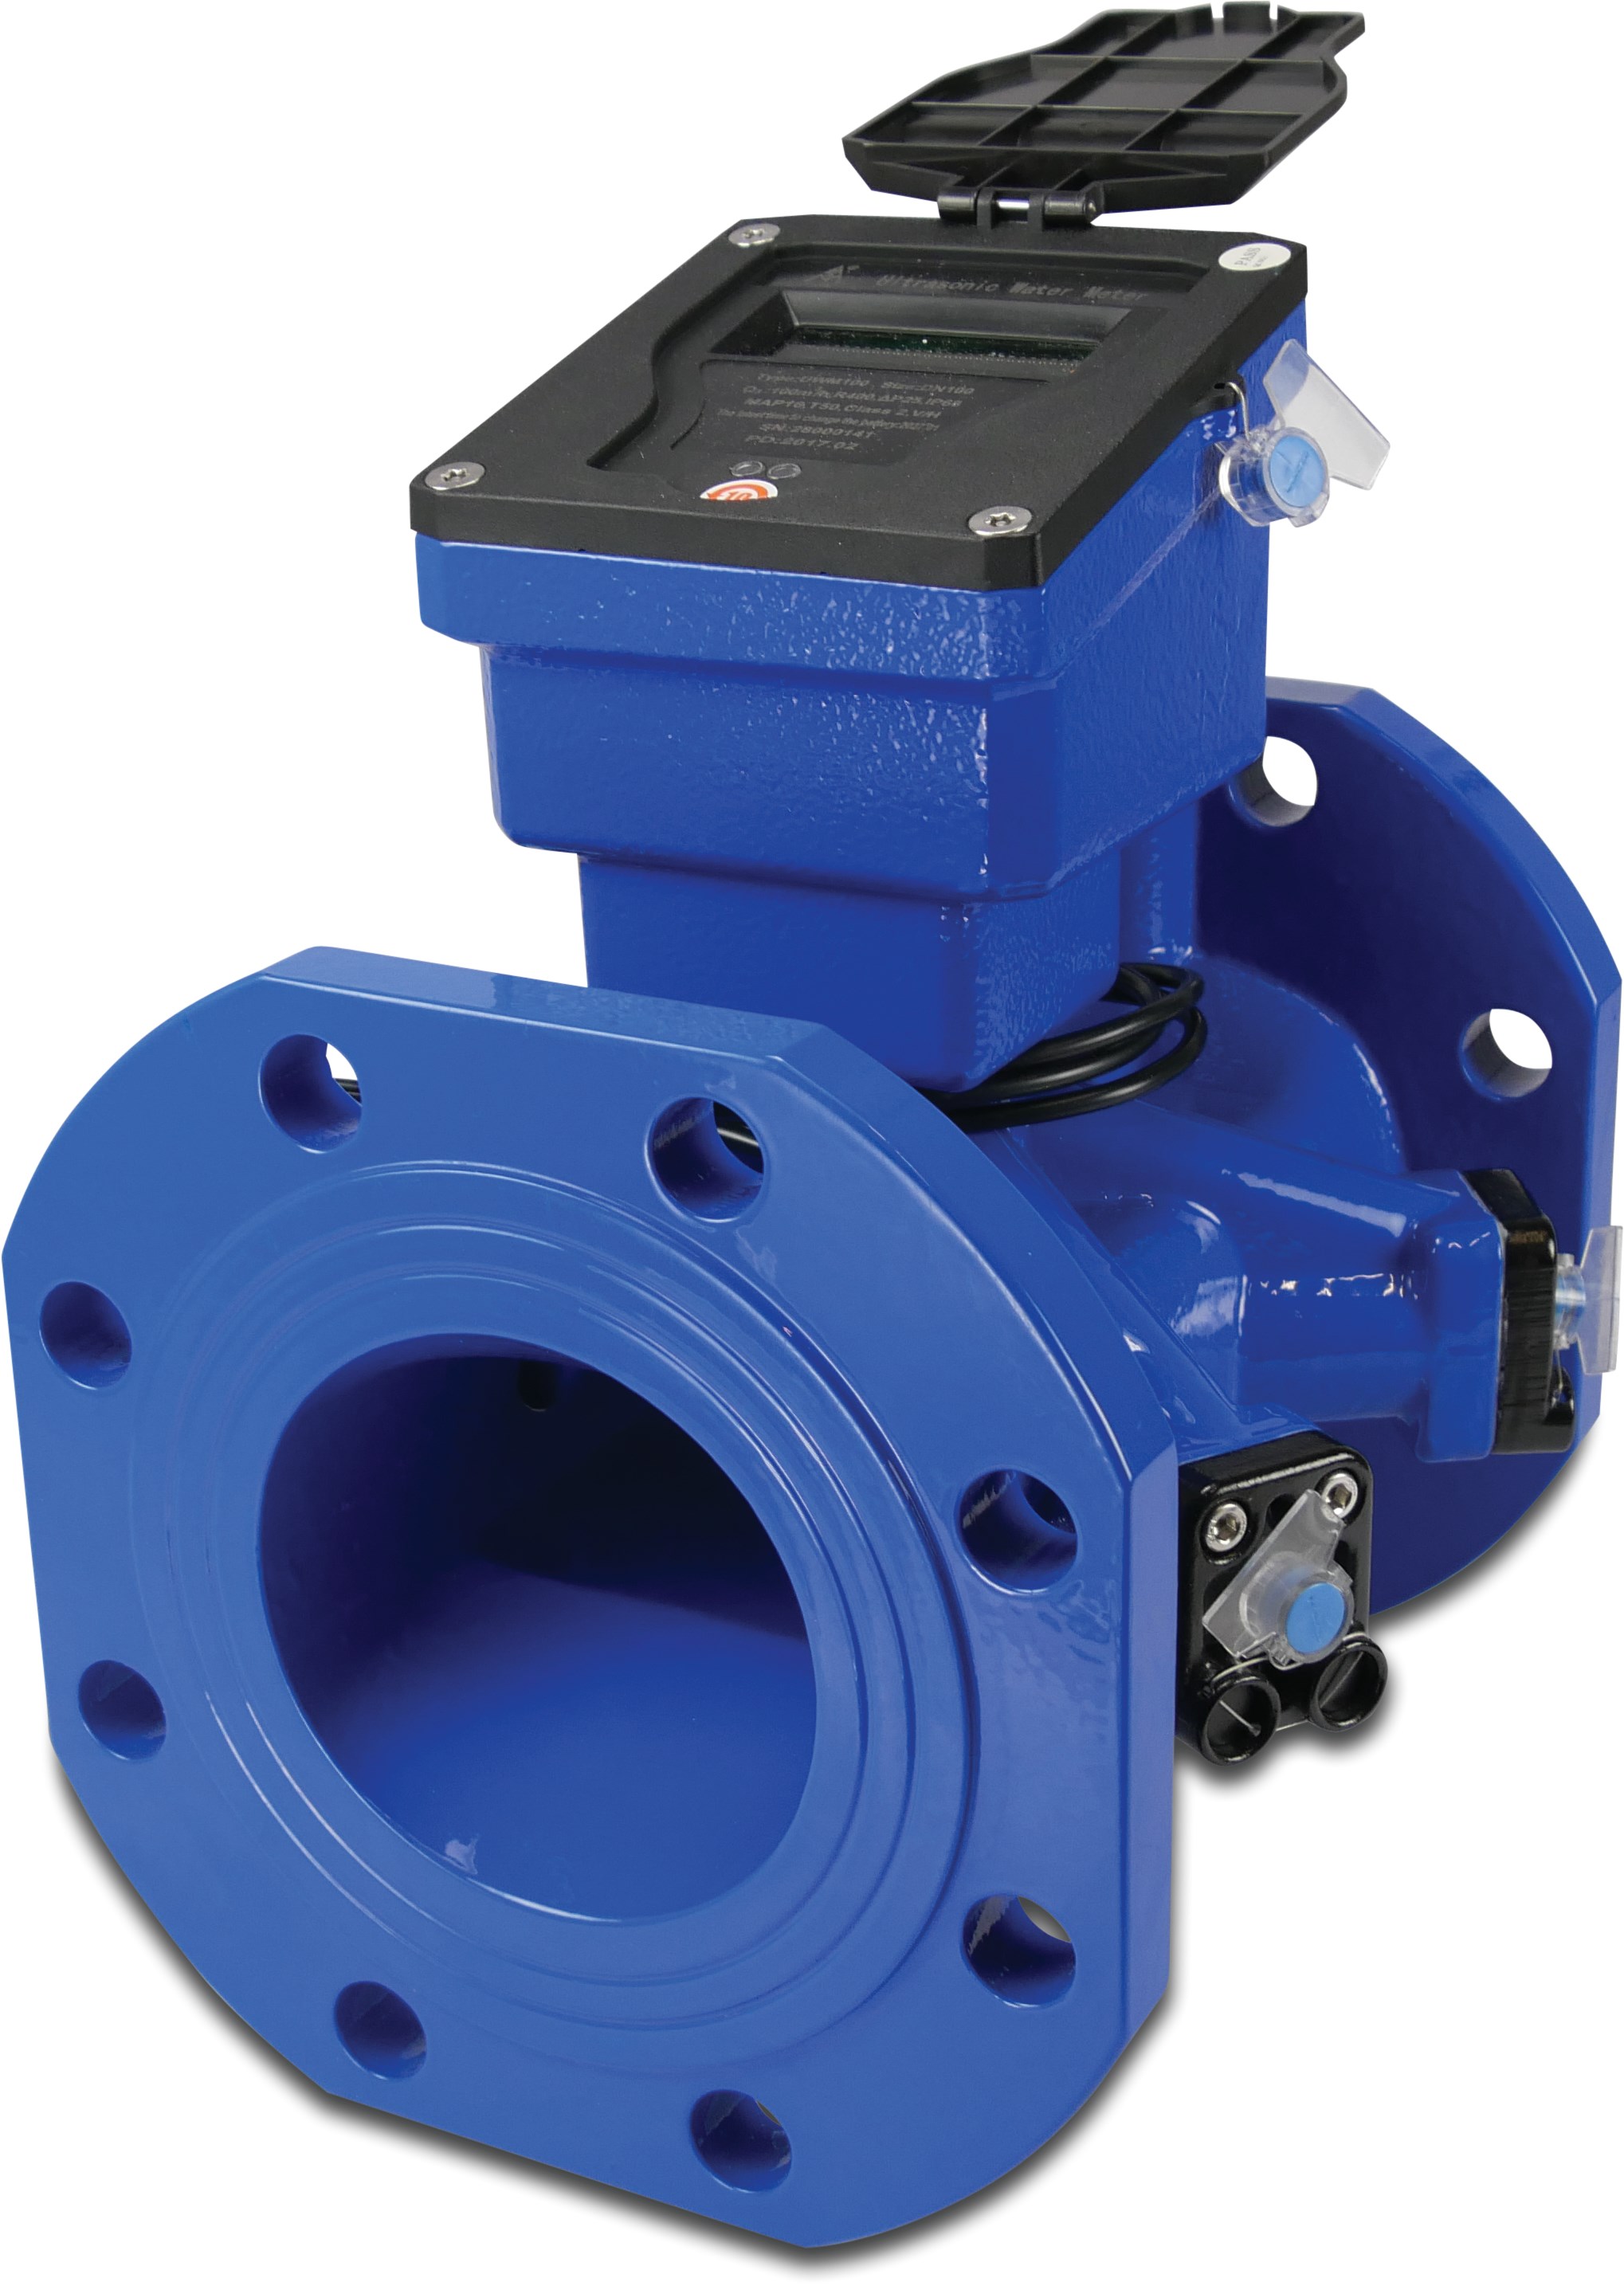 Profec Water meter cast iron DN50 DIN flange 16bar 25m³/h blue type Class 2